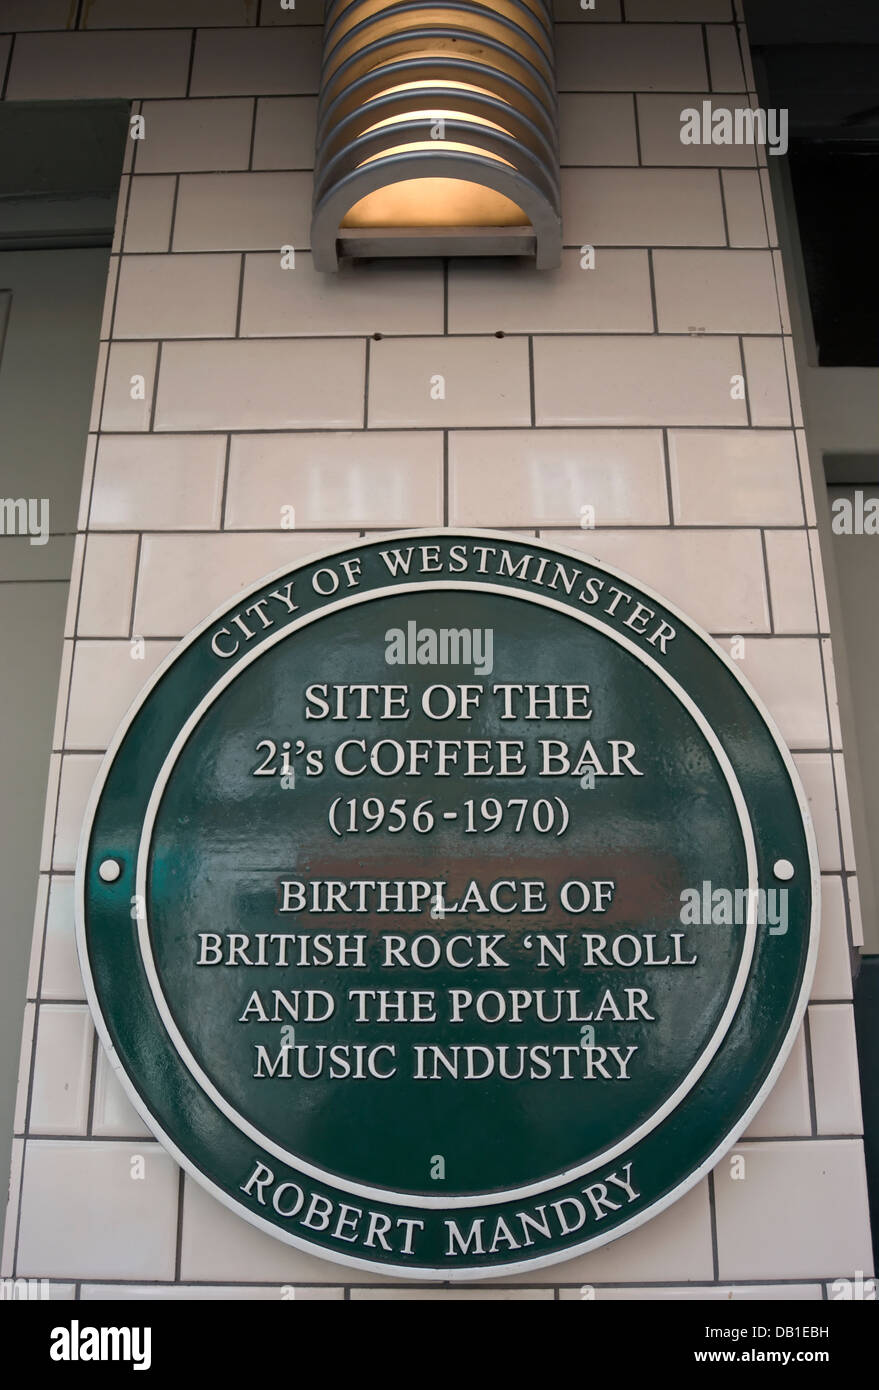 Consiglio di westminster green lapide segna il sito del 2i caffè del bar, descritta come il luogo di nascita del british rock and roll Foto Stock